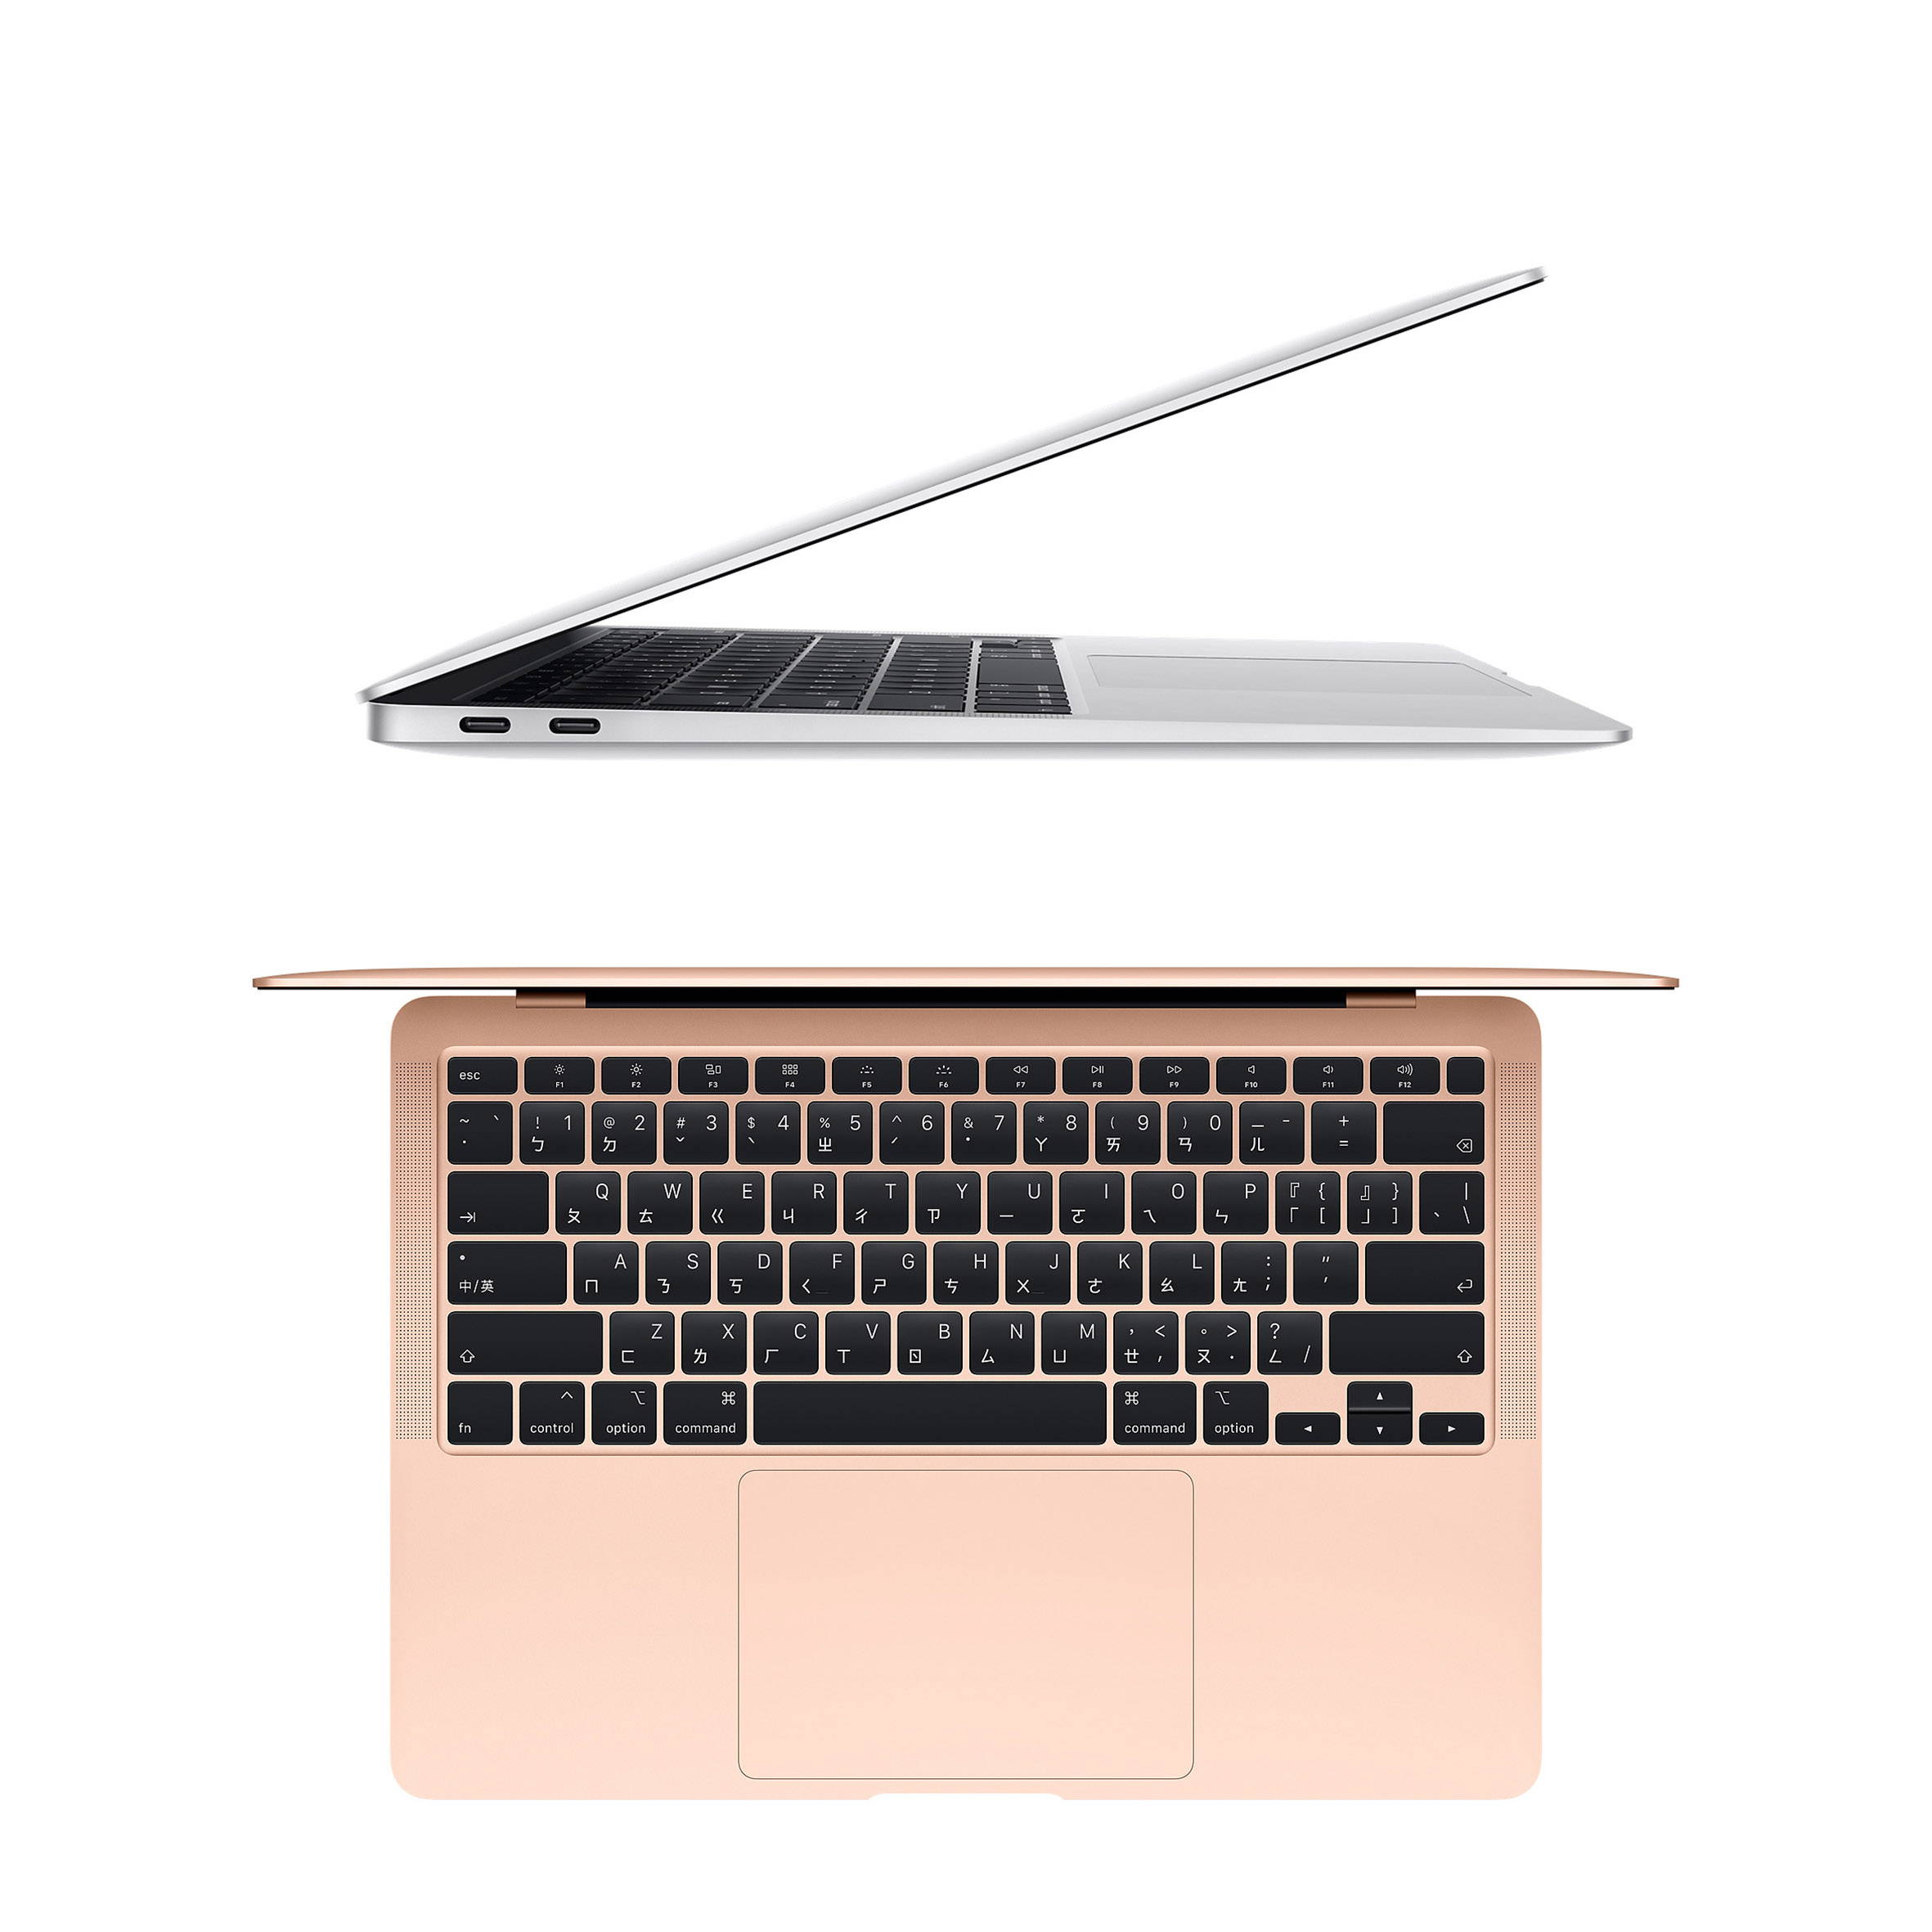 MacBook Air 13吋 256GB (2020年新款)